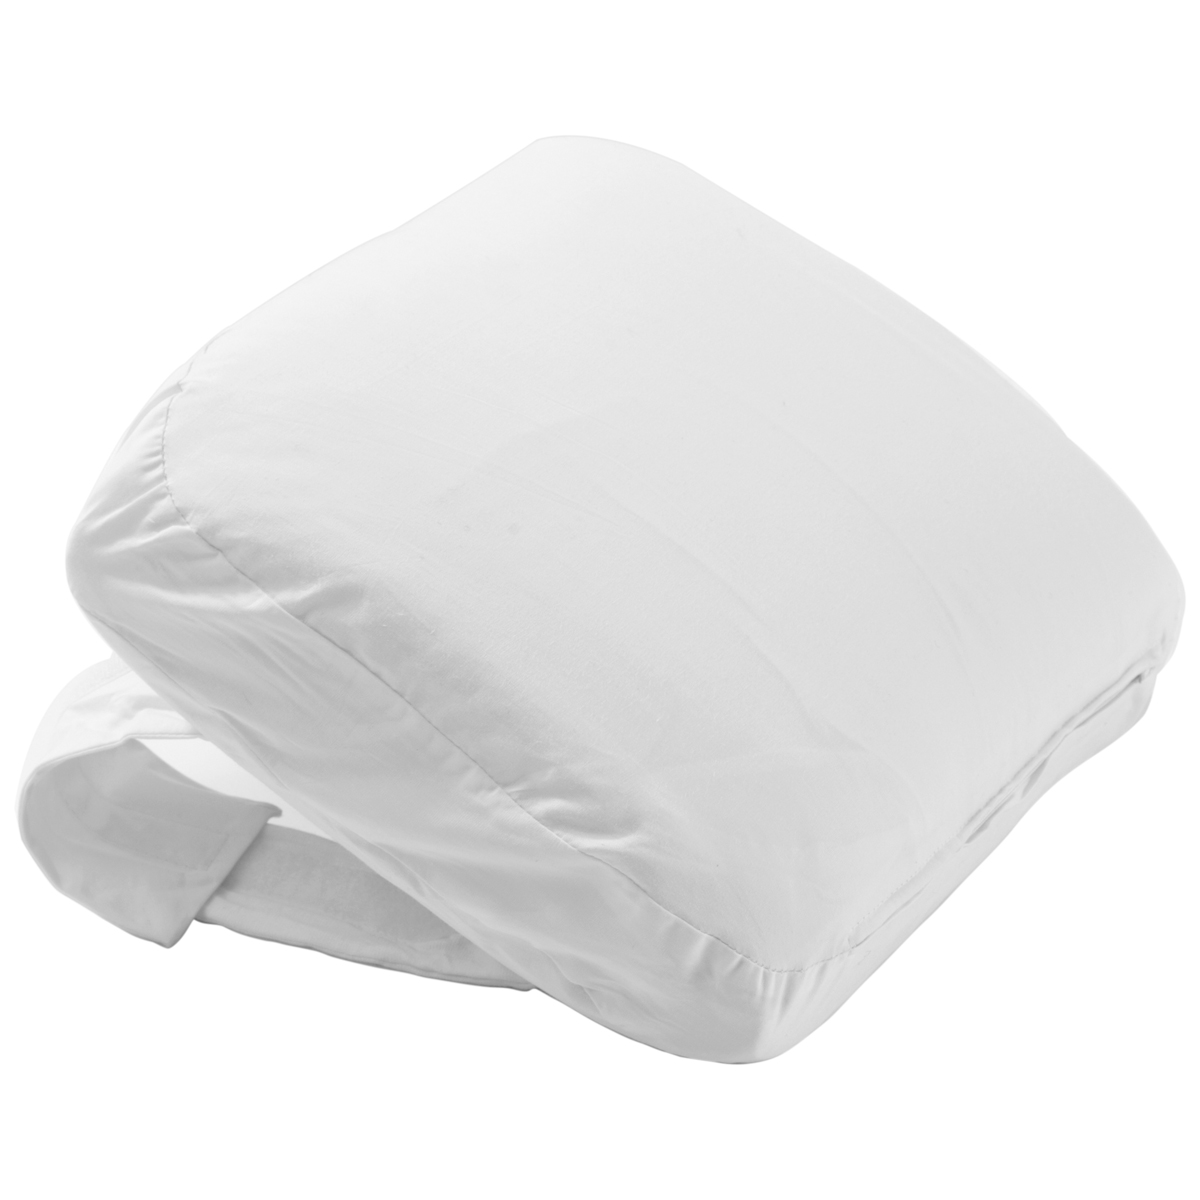 Knee Pillow met sloop wit - large